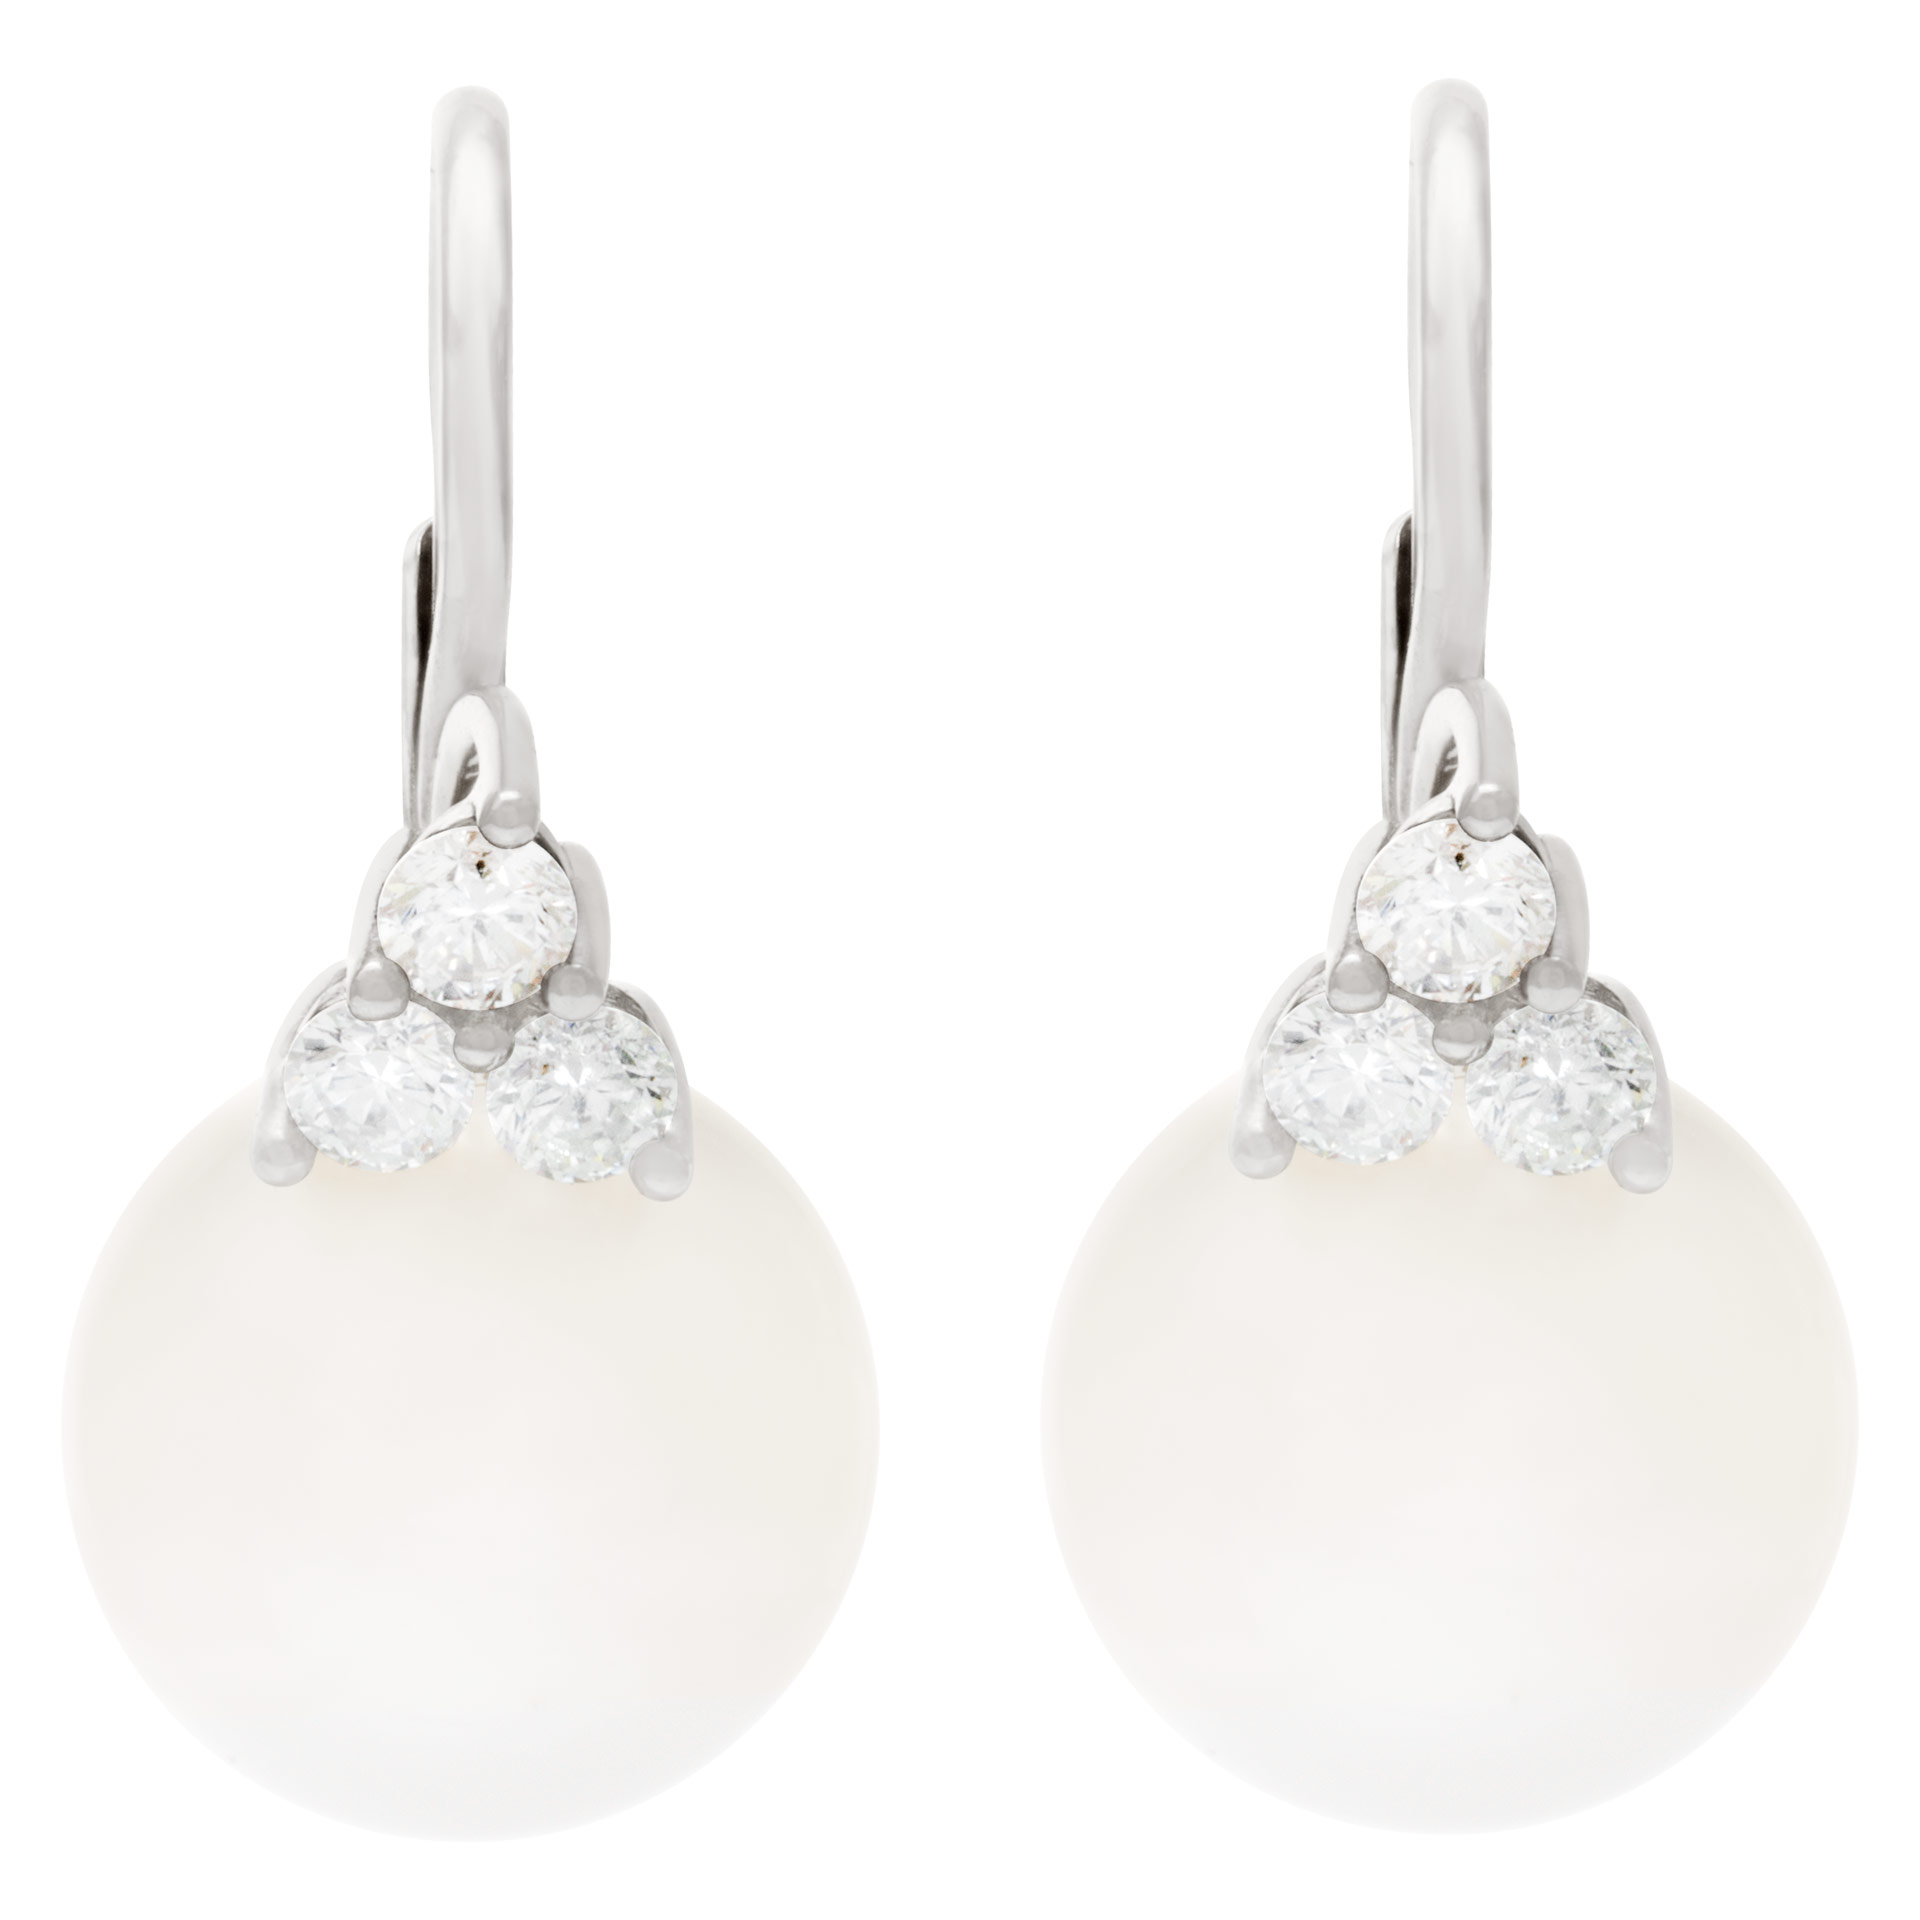 South Sea pearl  (14 x14.5mm) & diamonds earrings set in 18K white gold